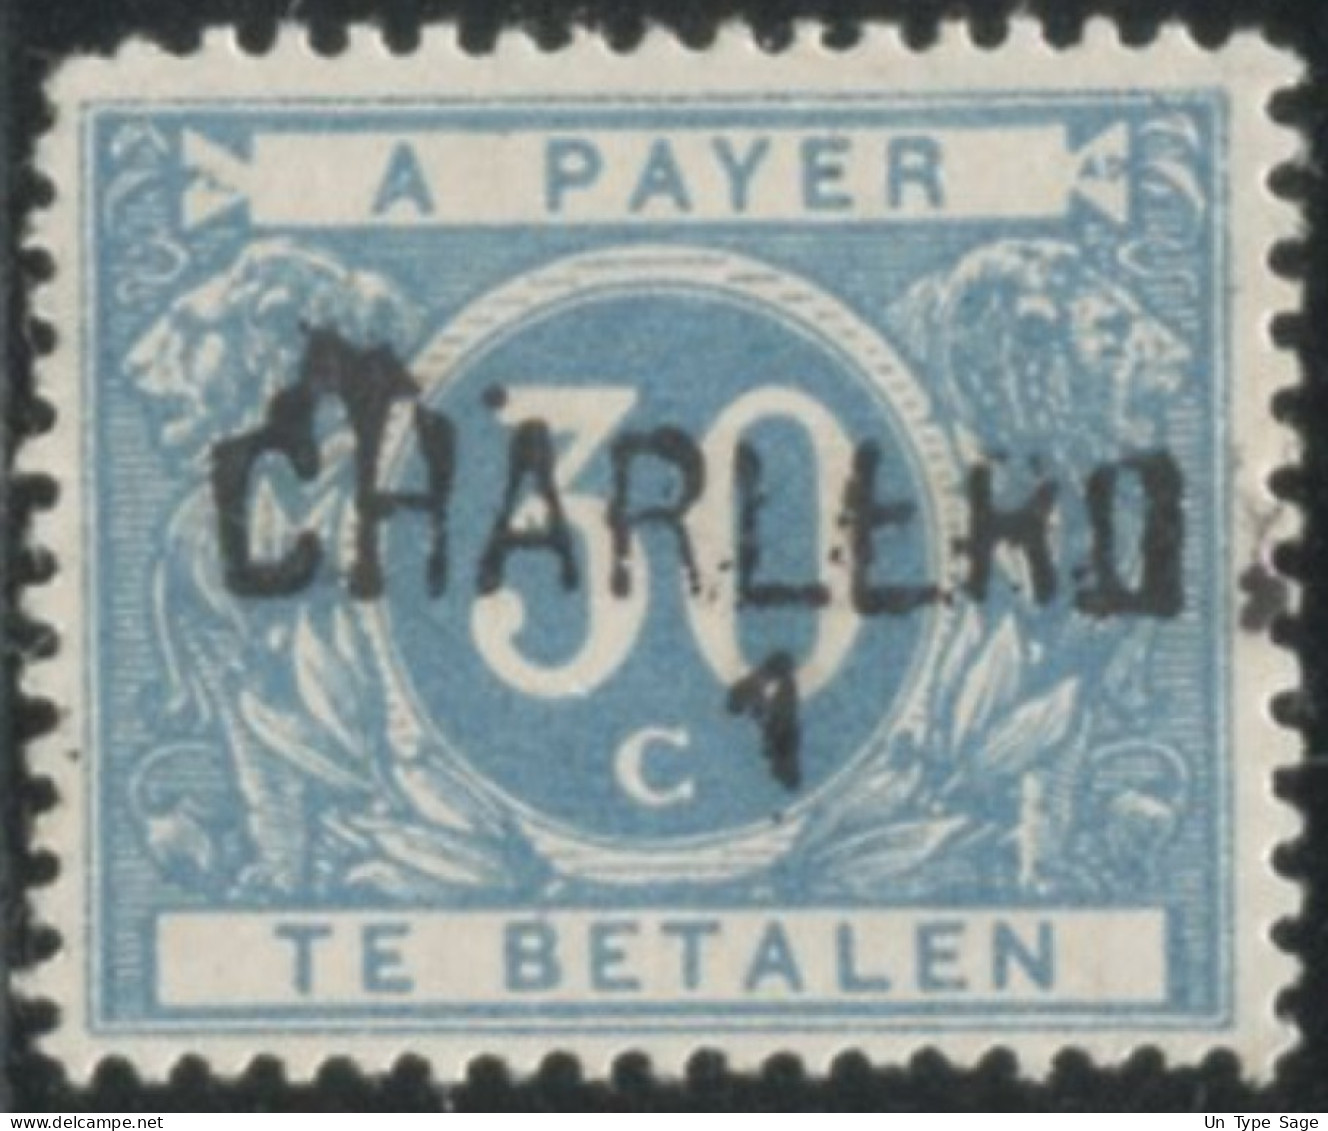 Belgique Timbre-taxe (TX) - Surcharge Locale De Distributeur - CHARLEROY 1 - (F996) - Briefmarken